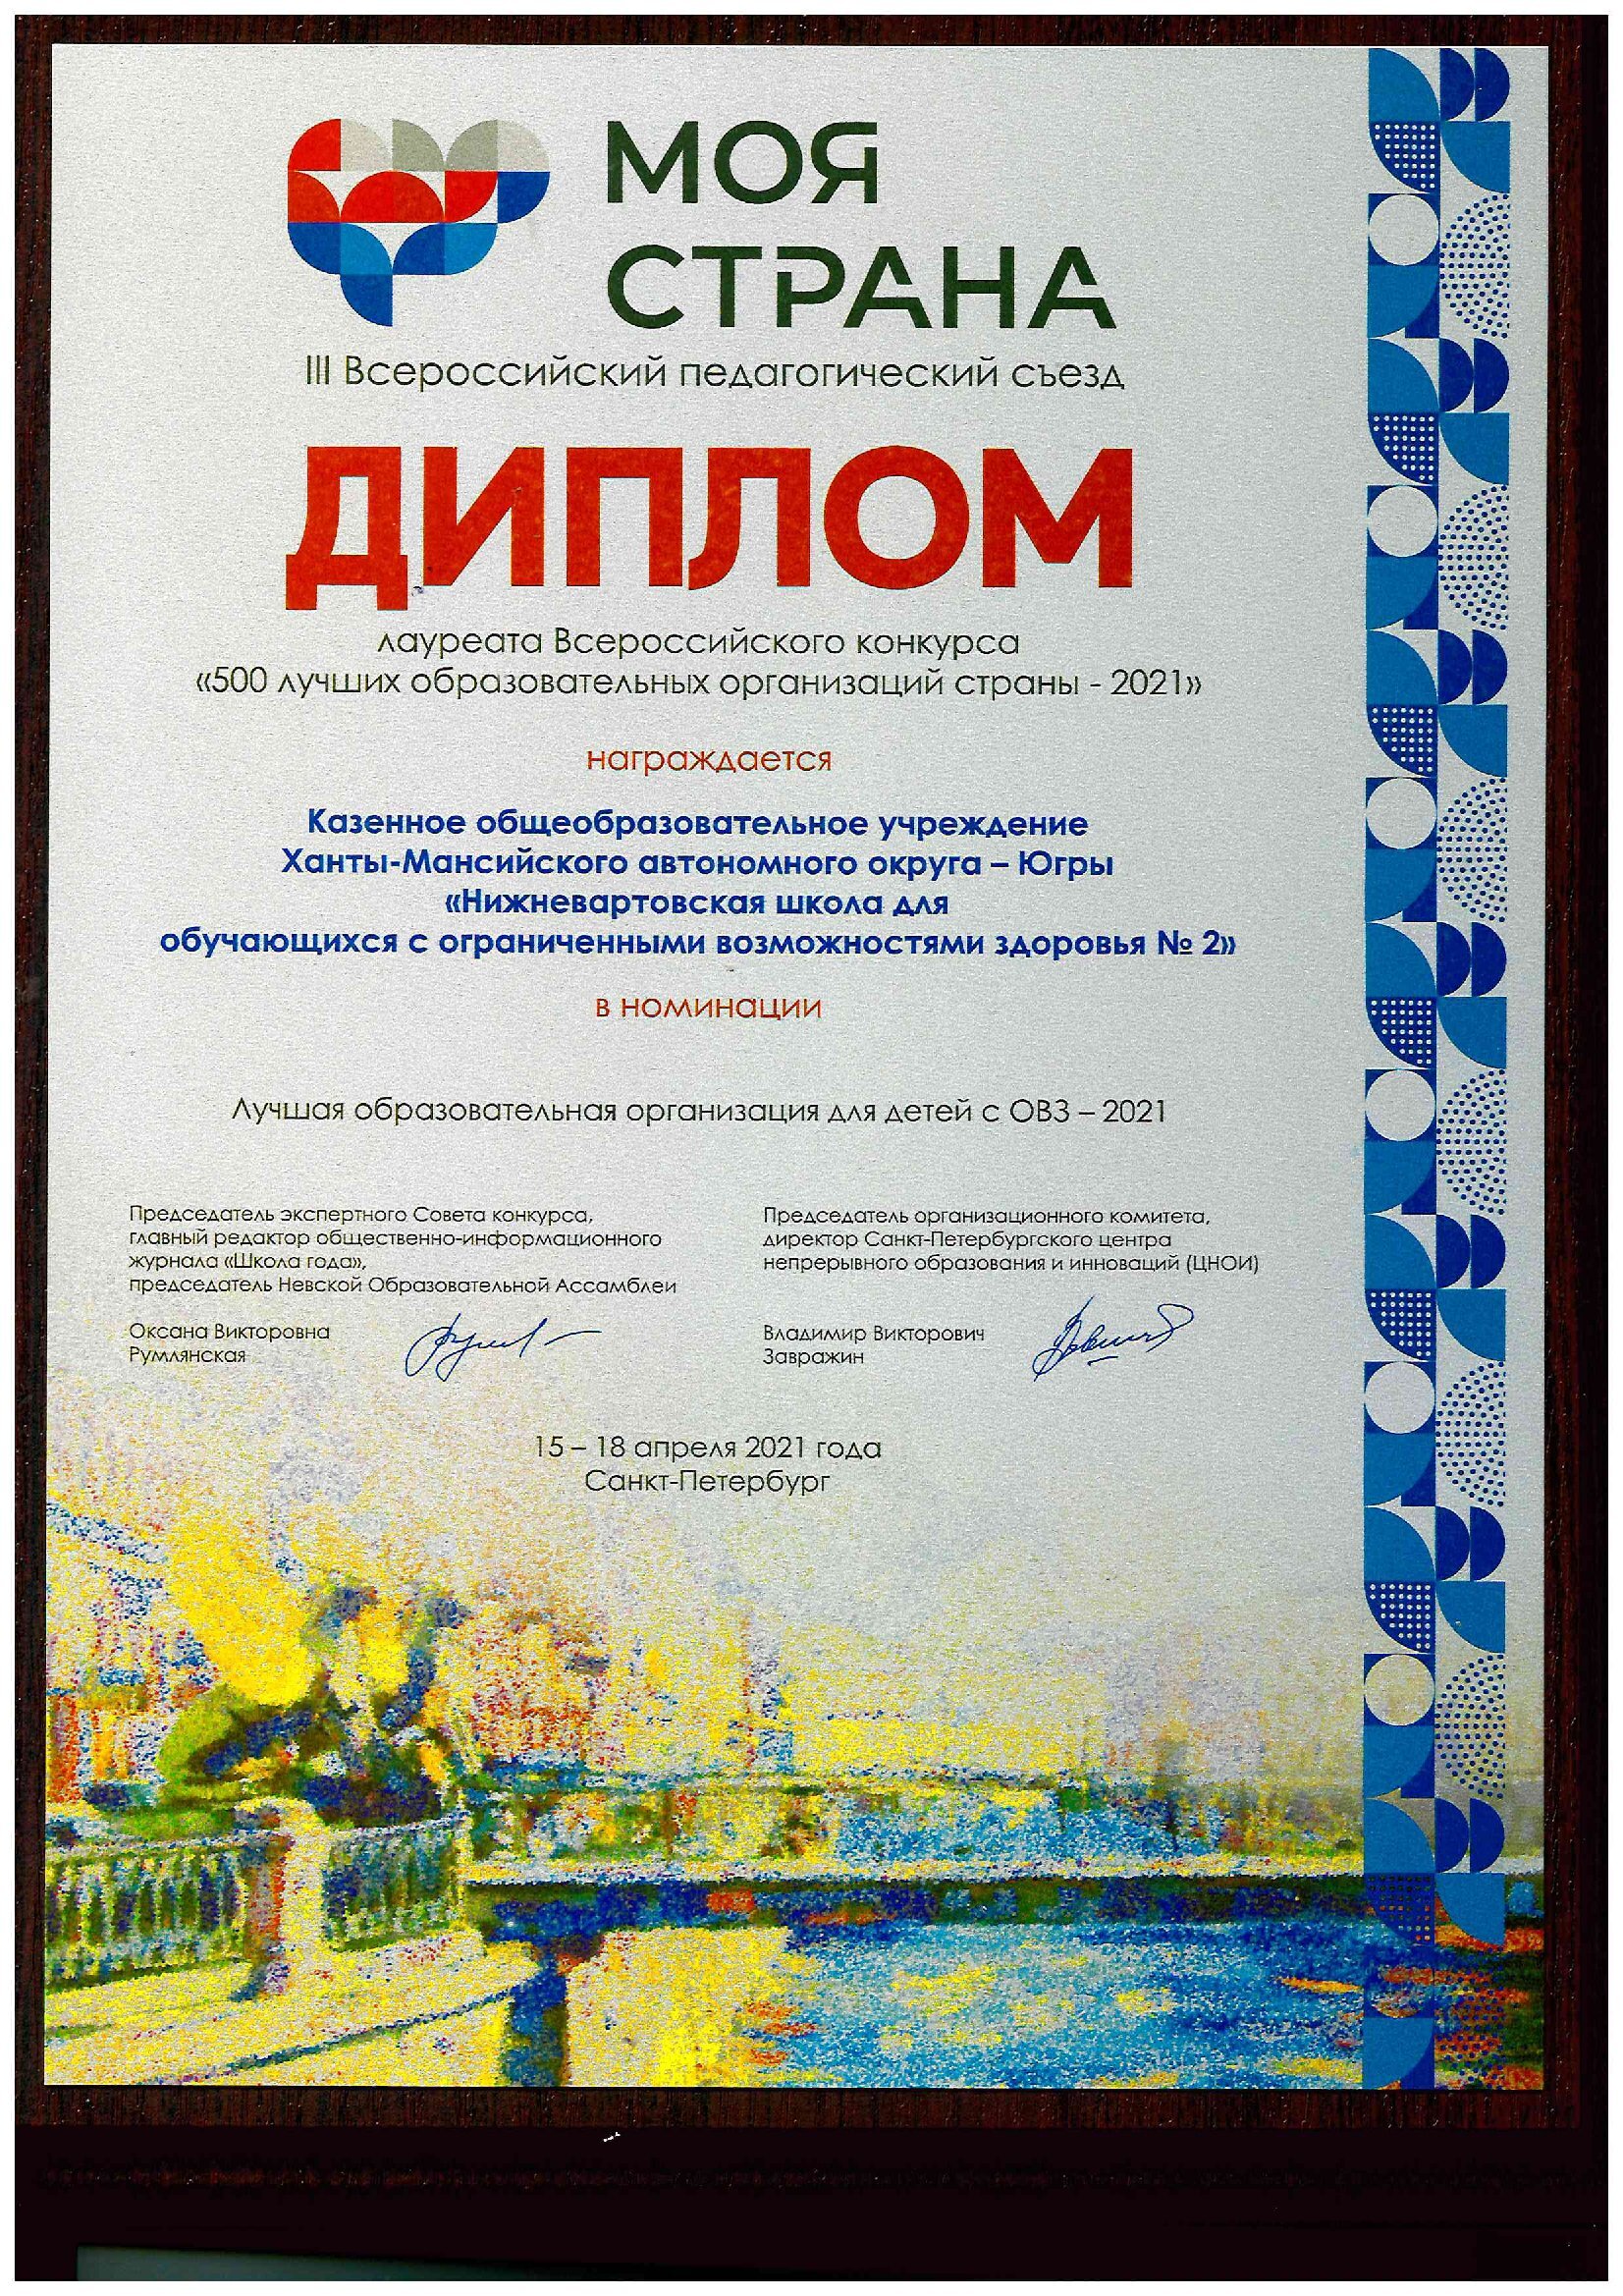 Лауреат премии III Всероссийского съезда "Моя страна" в номинации "Лучшая образовательная организация для детей с ОВЗ"